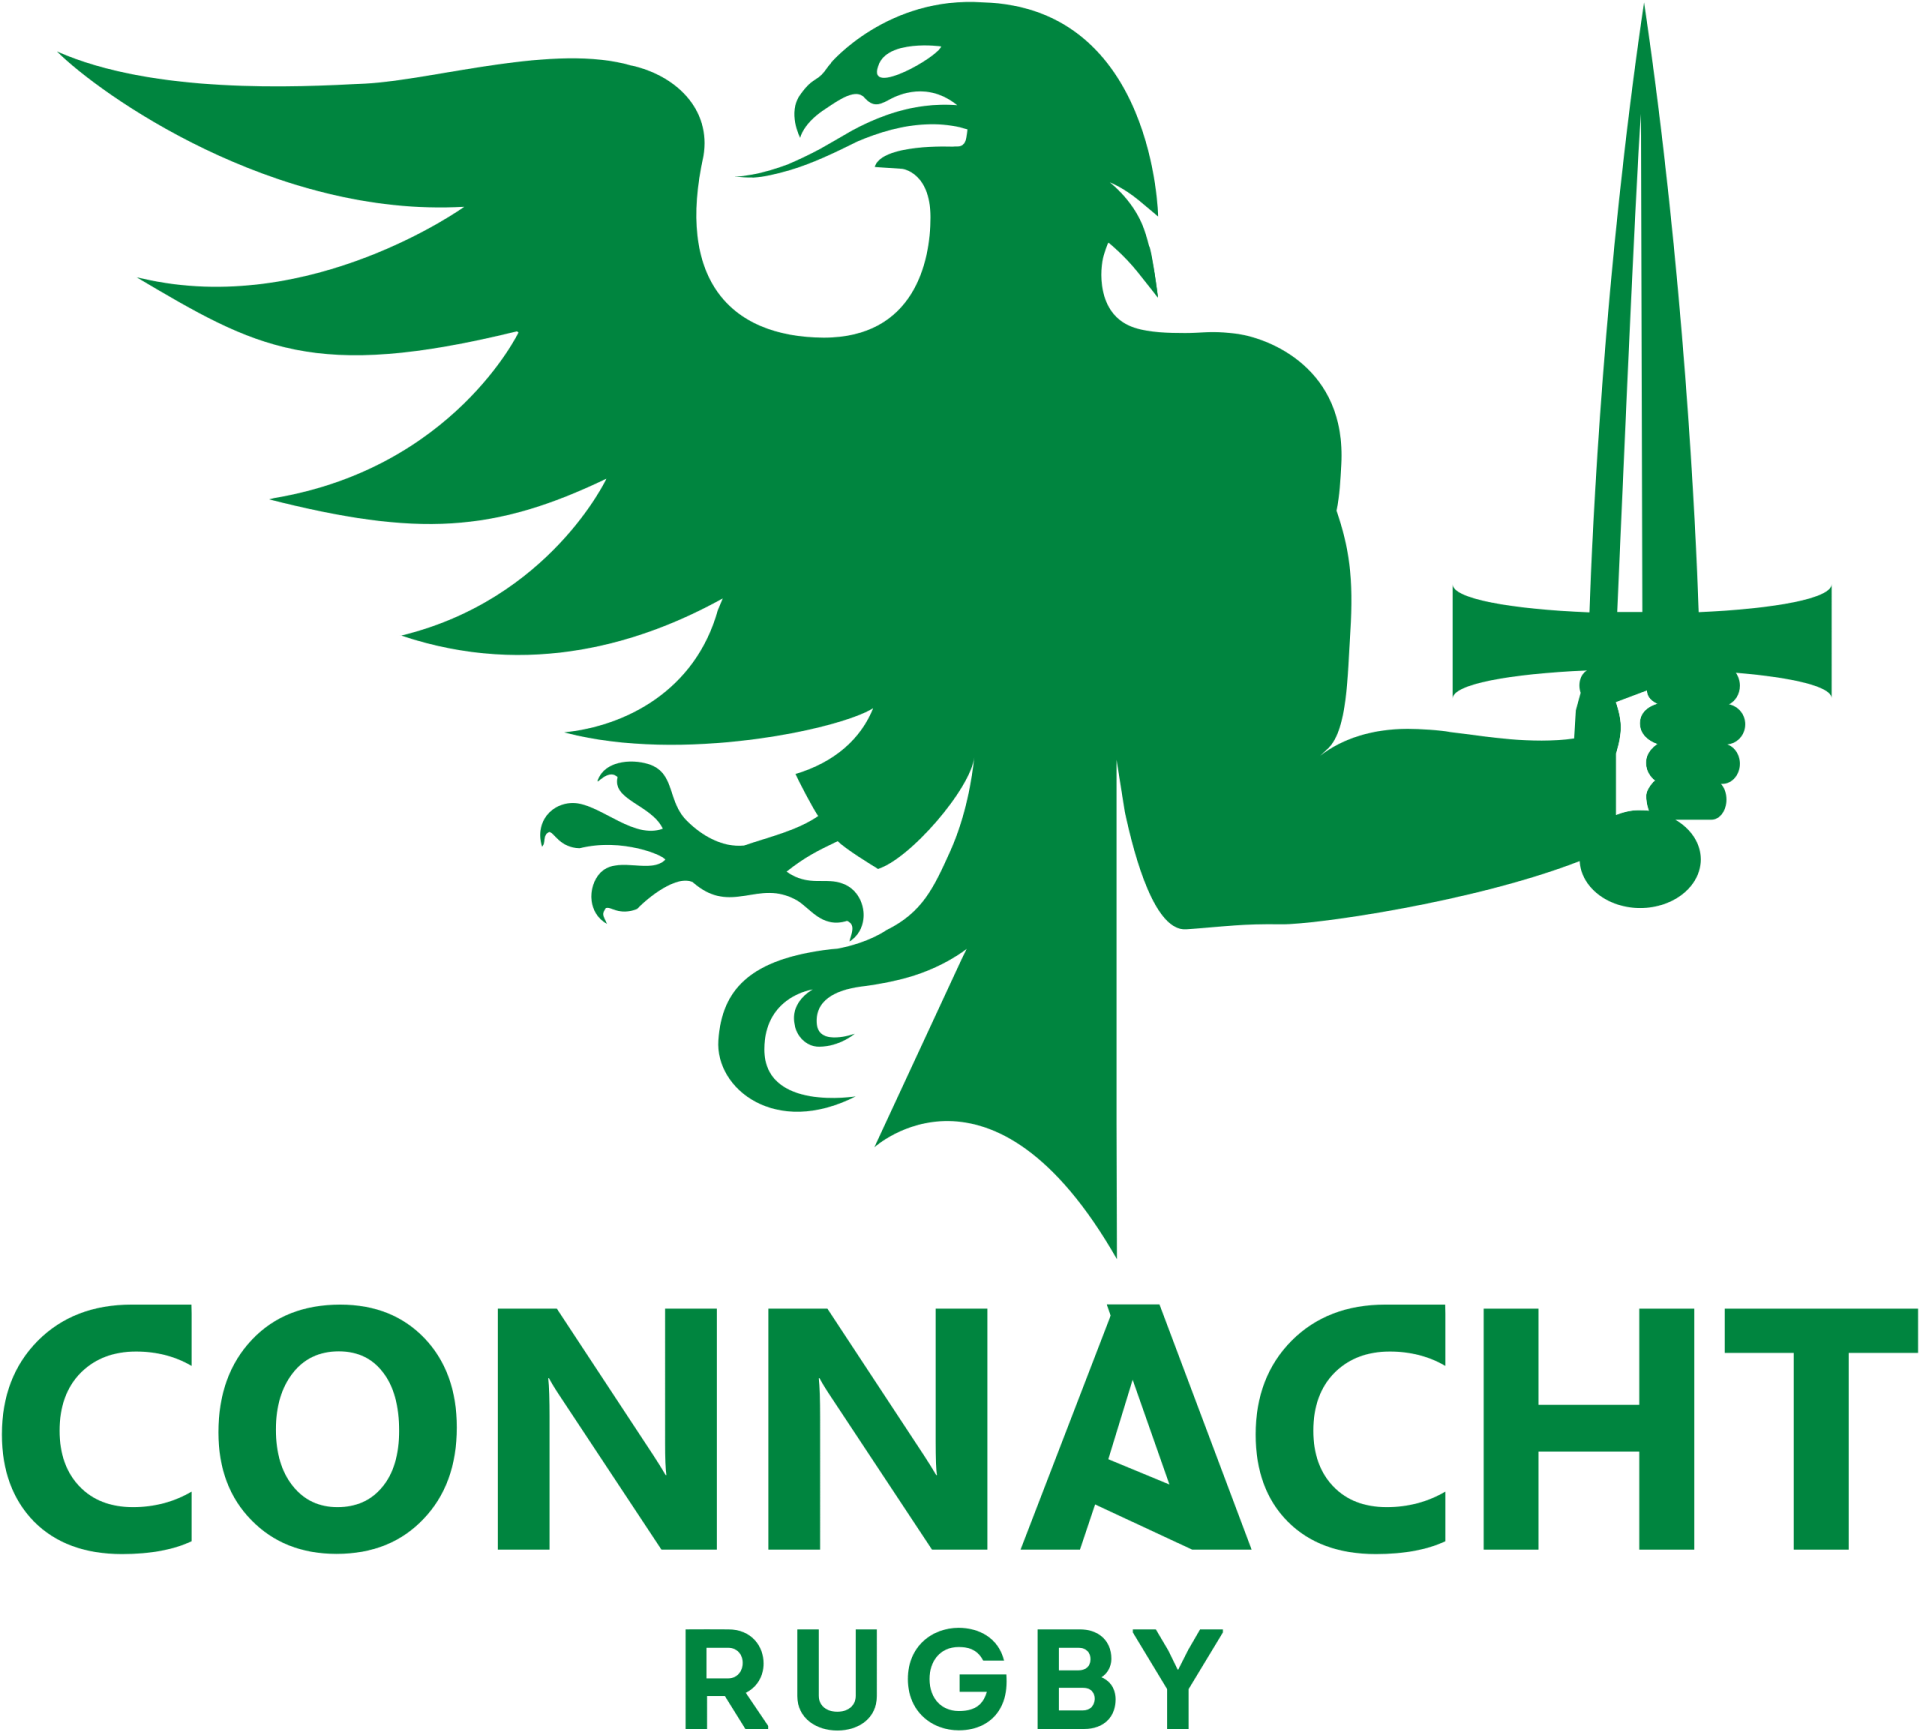 Connacht rugby